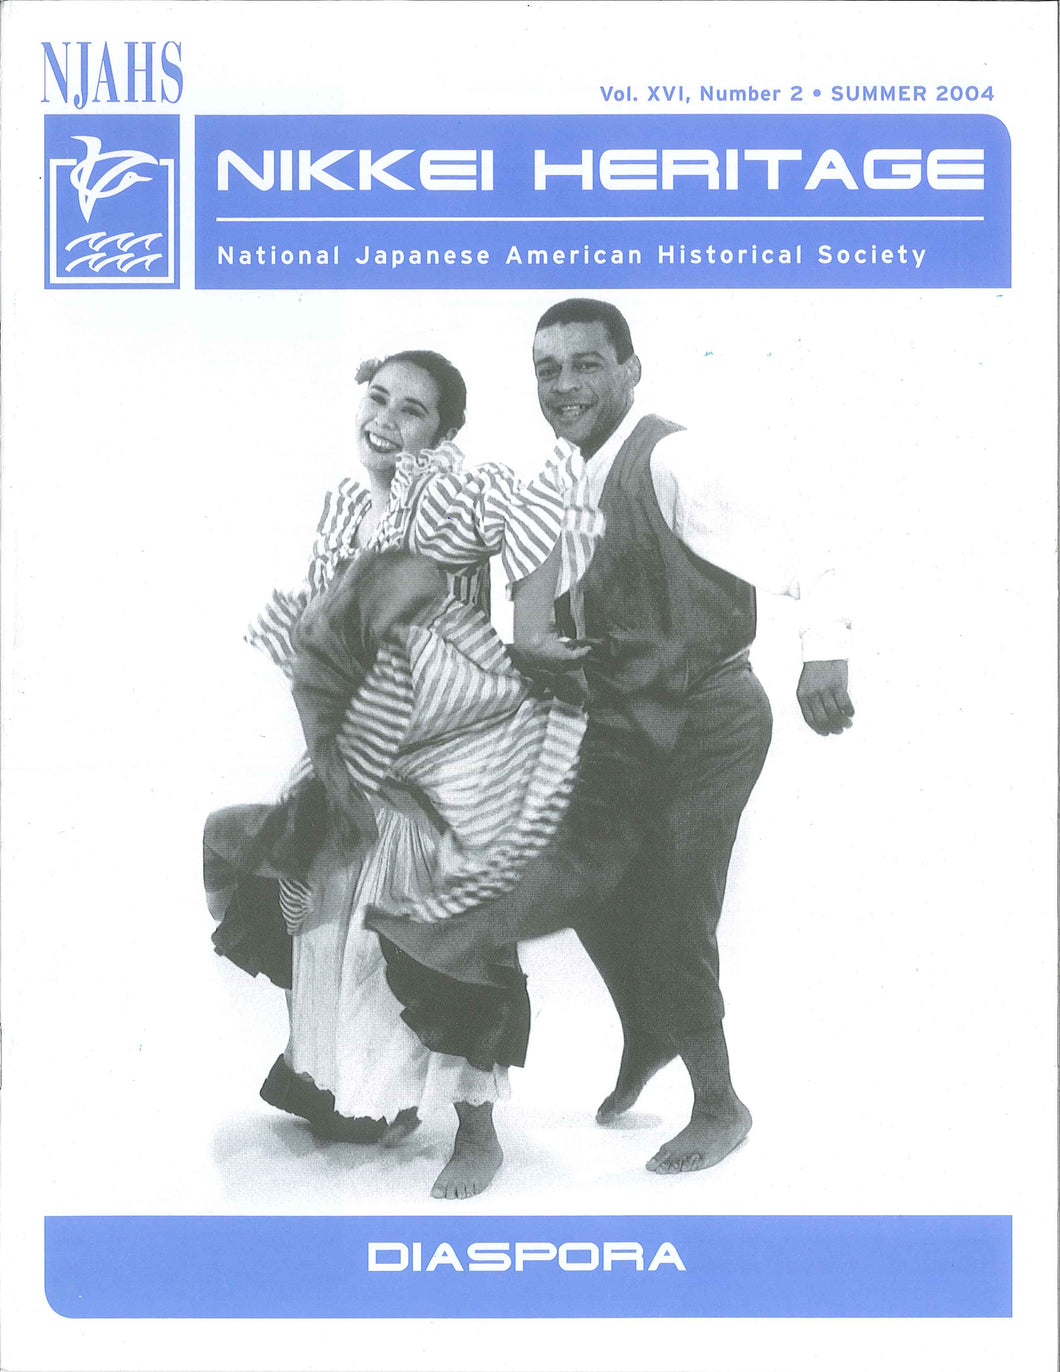 Nikkei Heritage - Diaspora